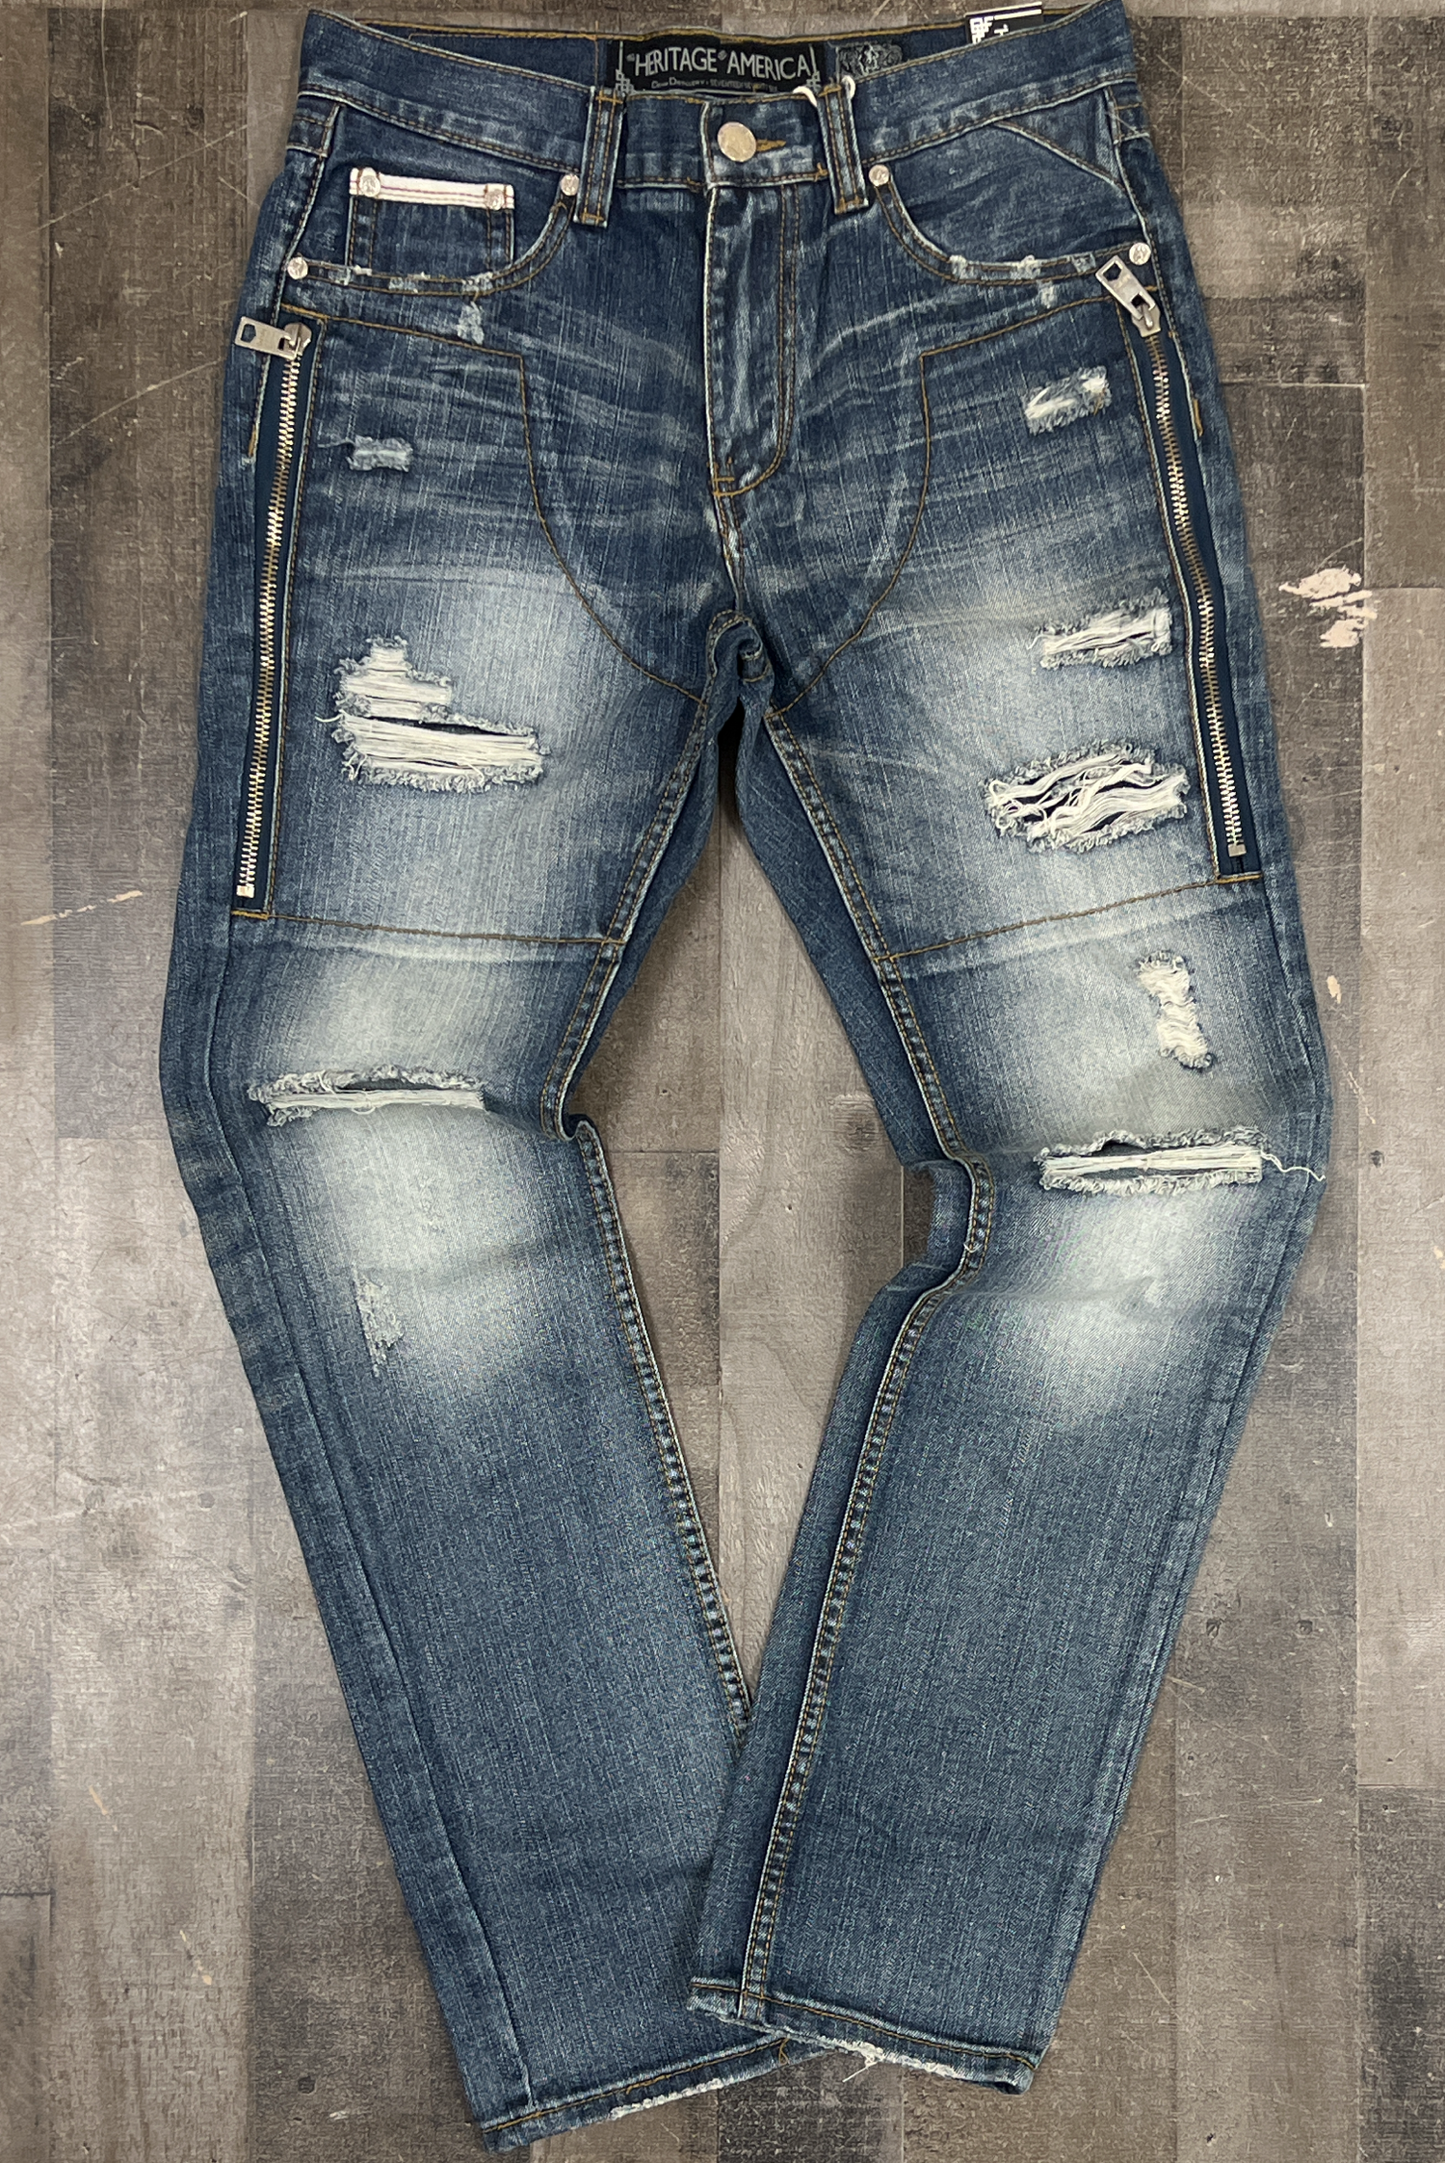 HERITAGE AMERICA- side zipper jeans